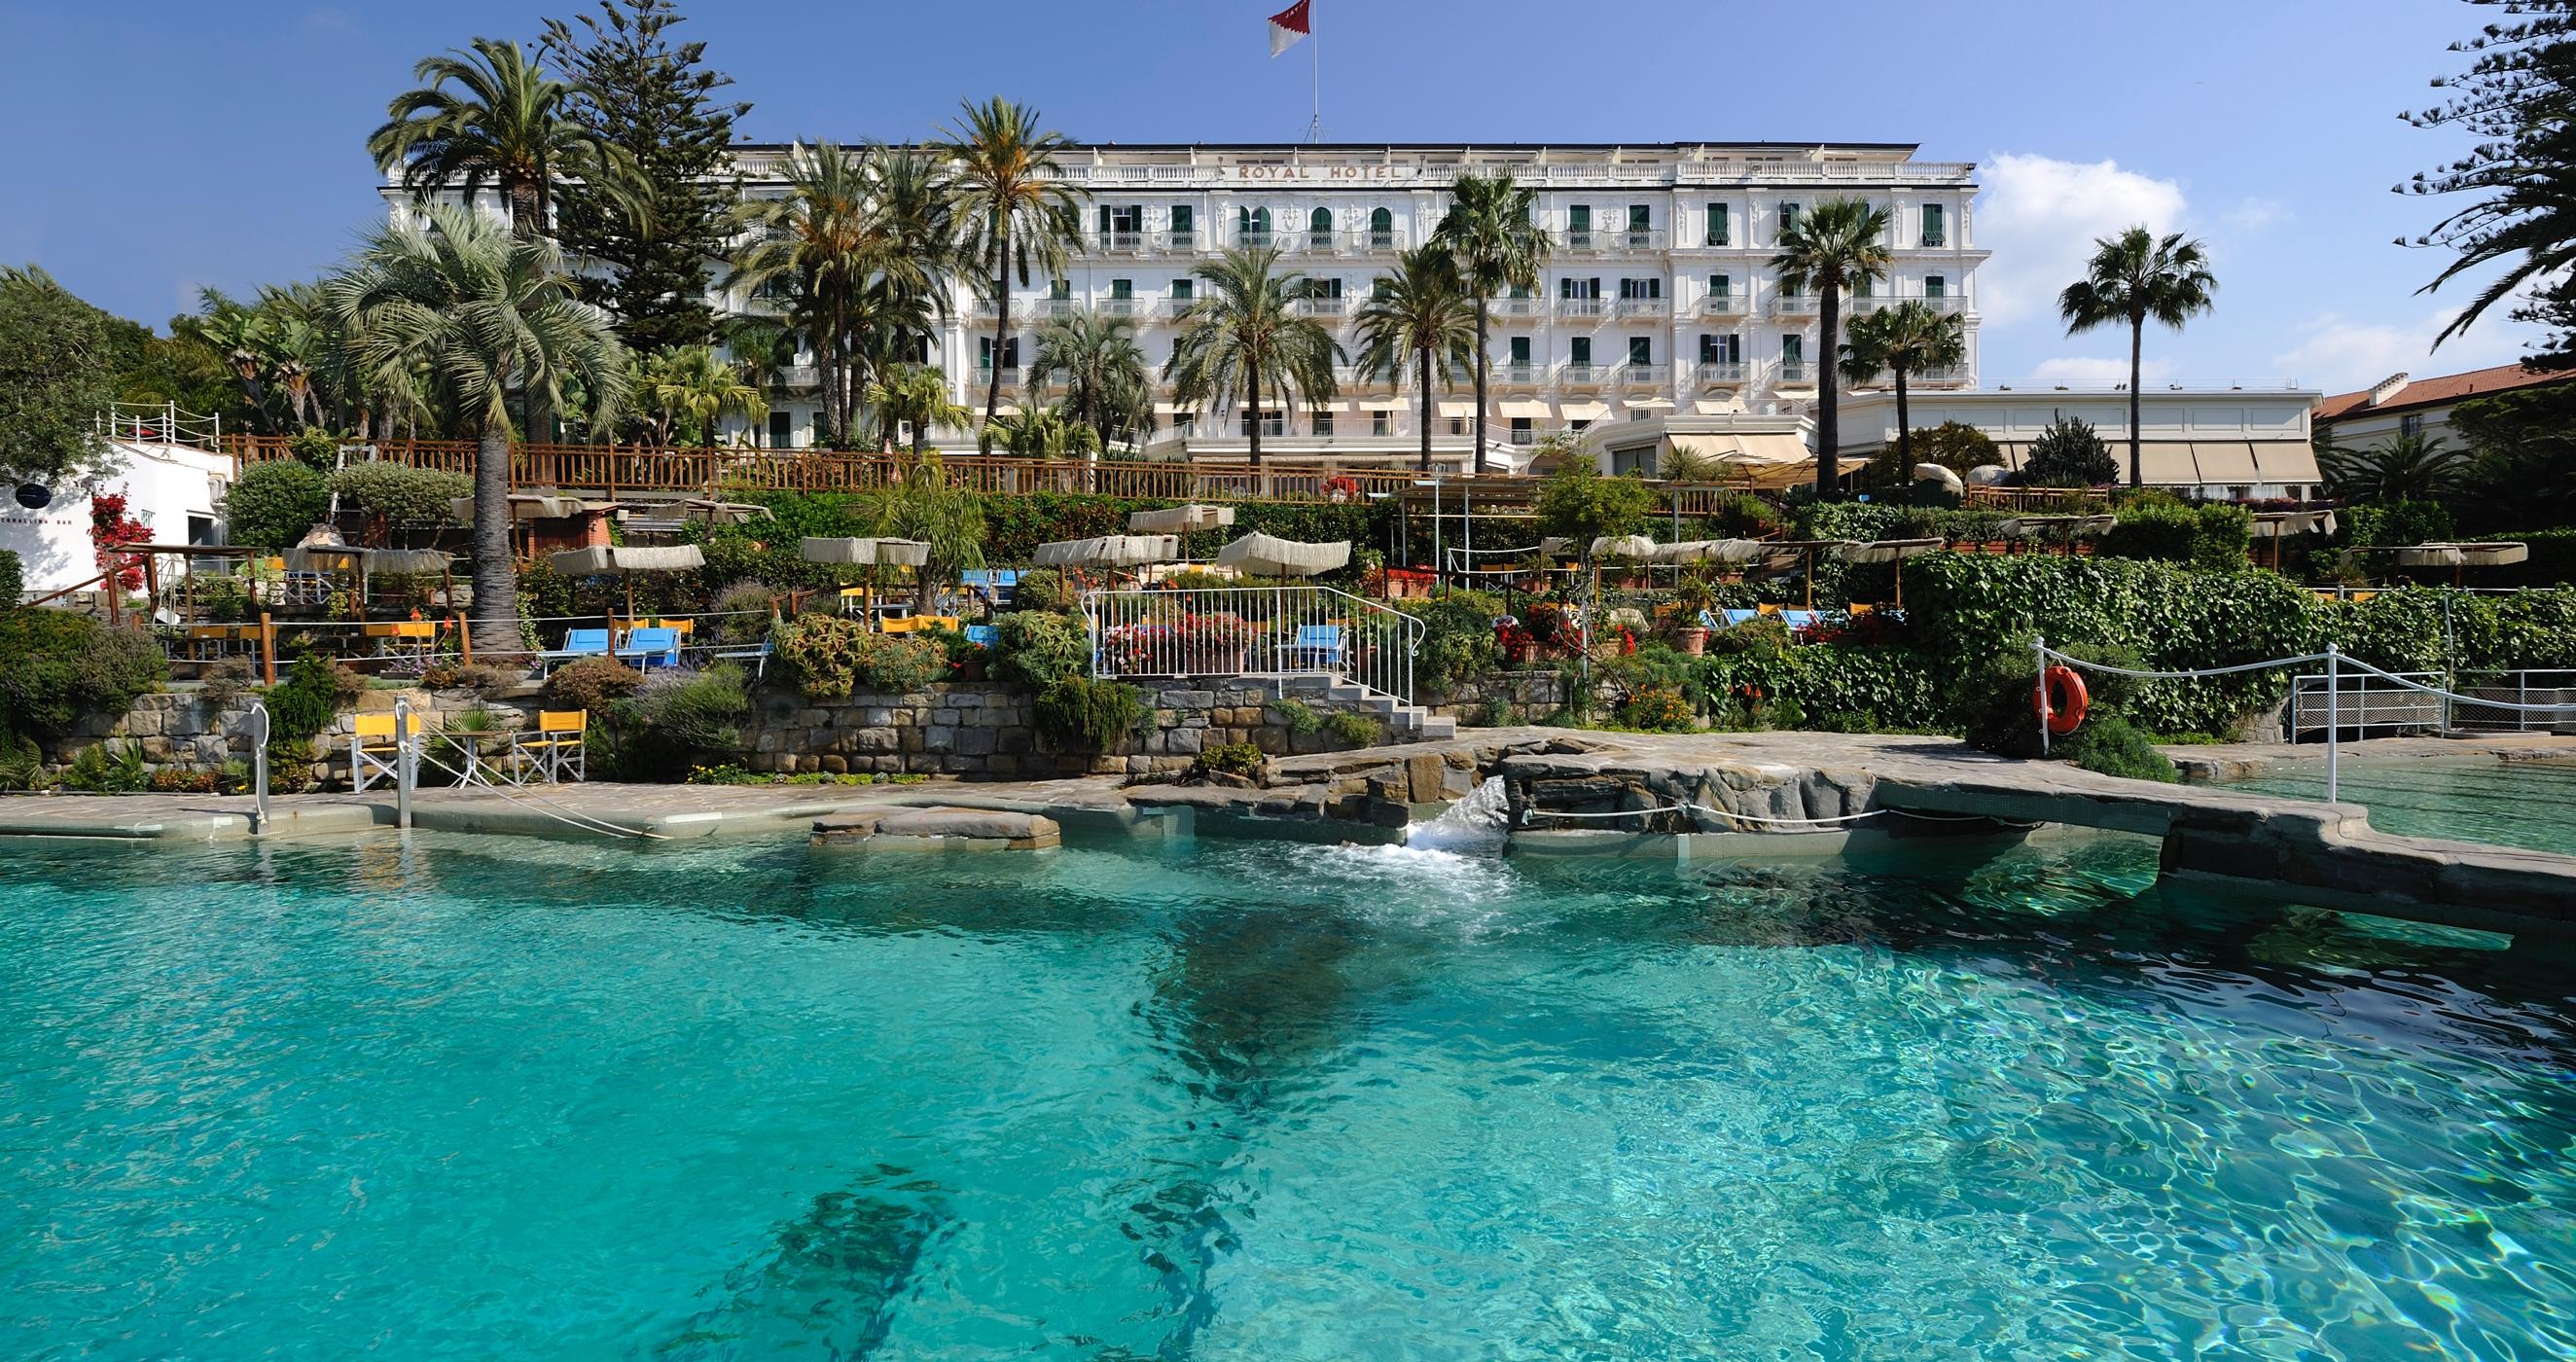 Royal Hotel Sanremo, Italy